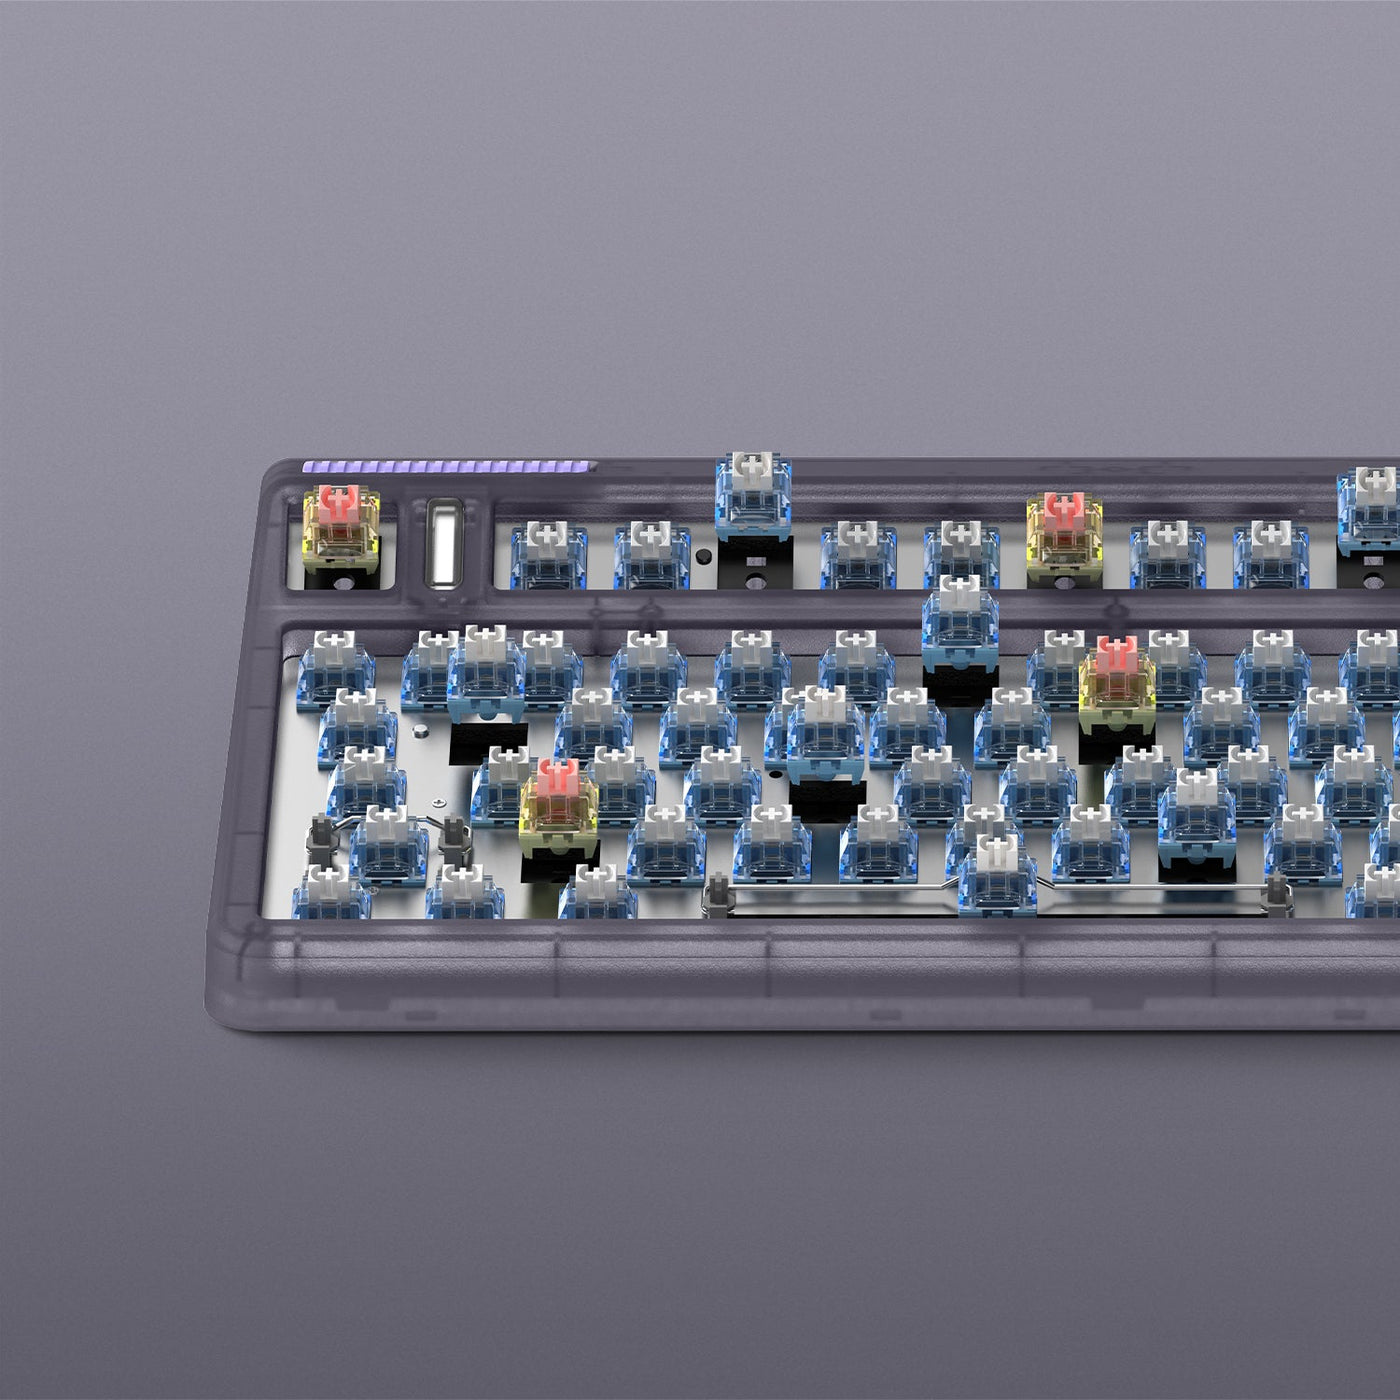 IQUNIX F97 Lavandin Wireless Mechanical Keyboard